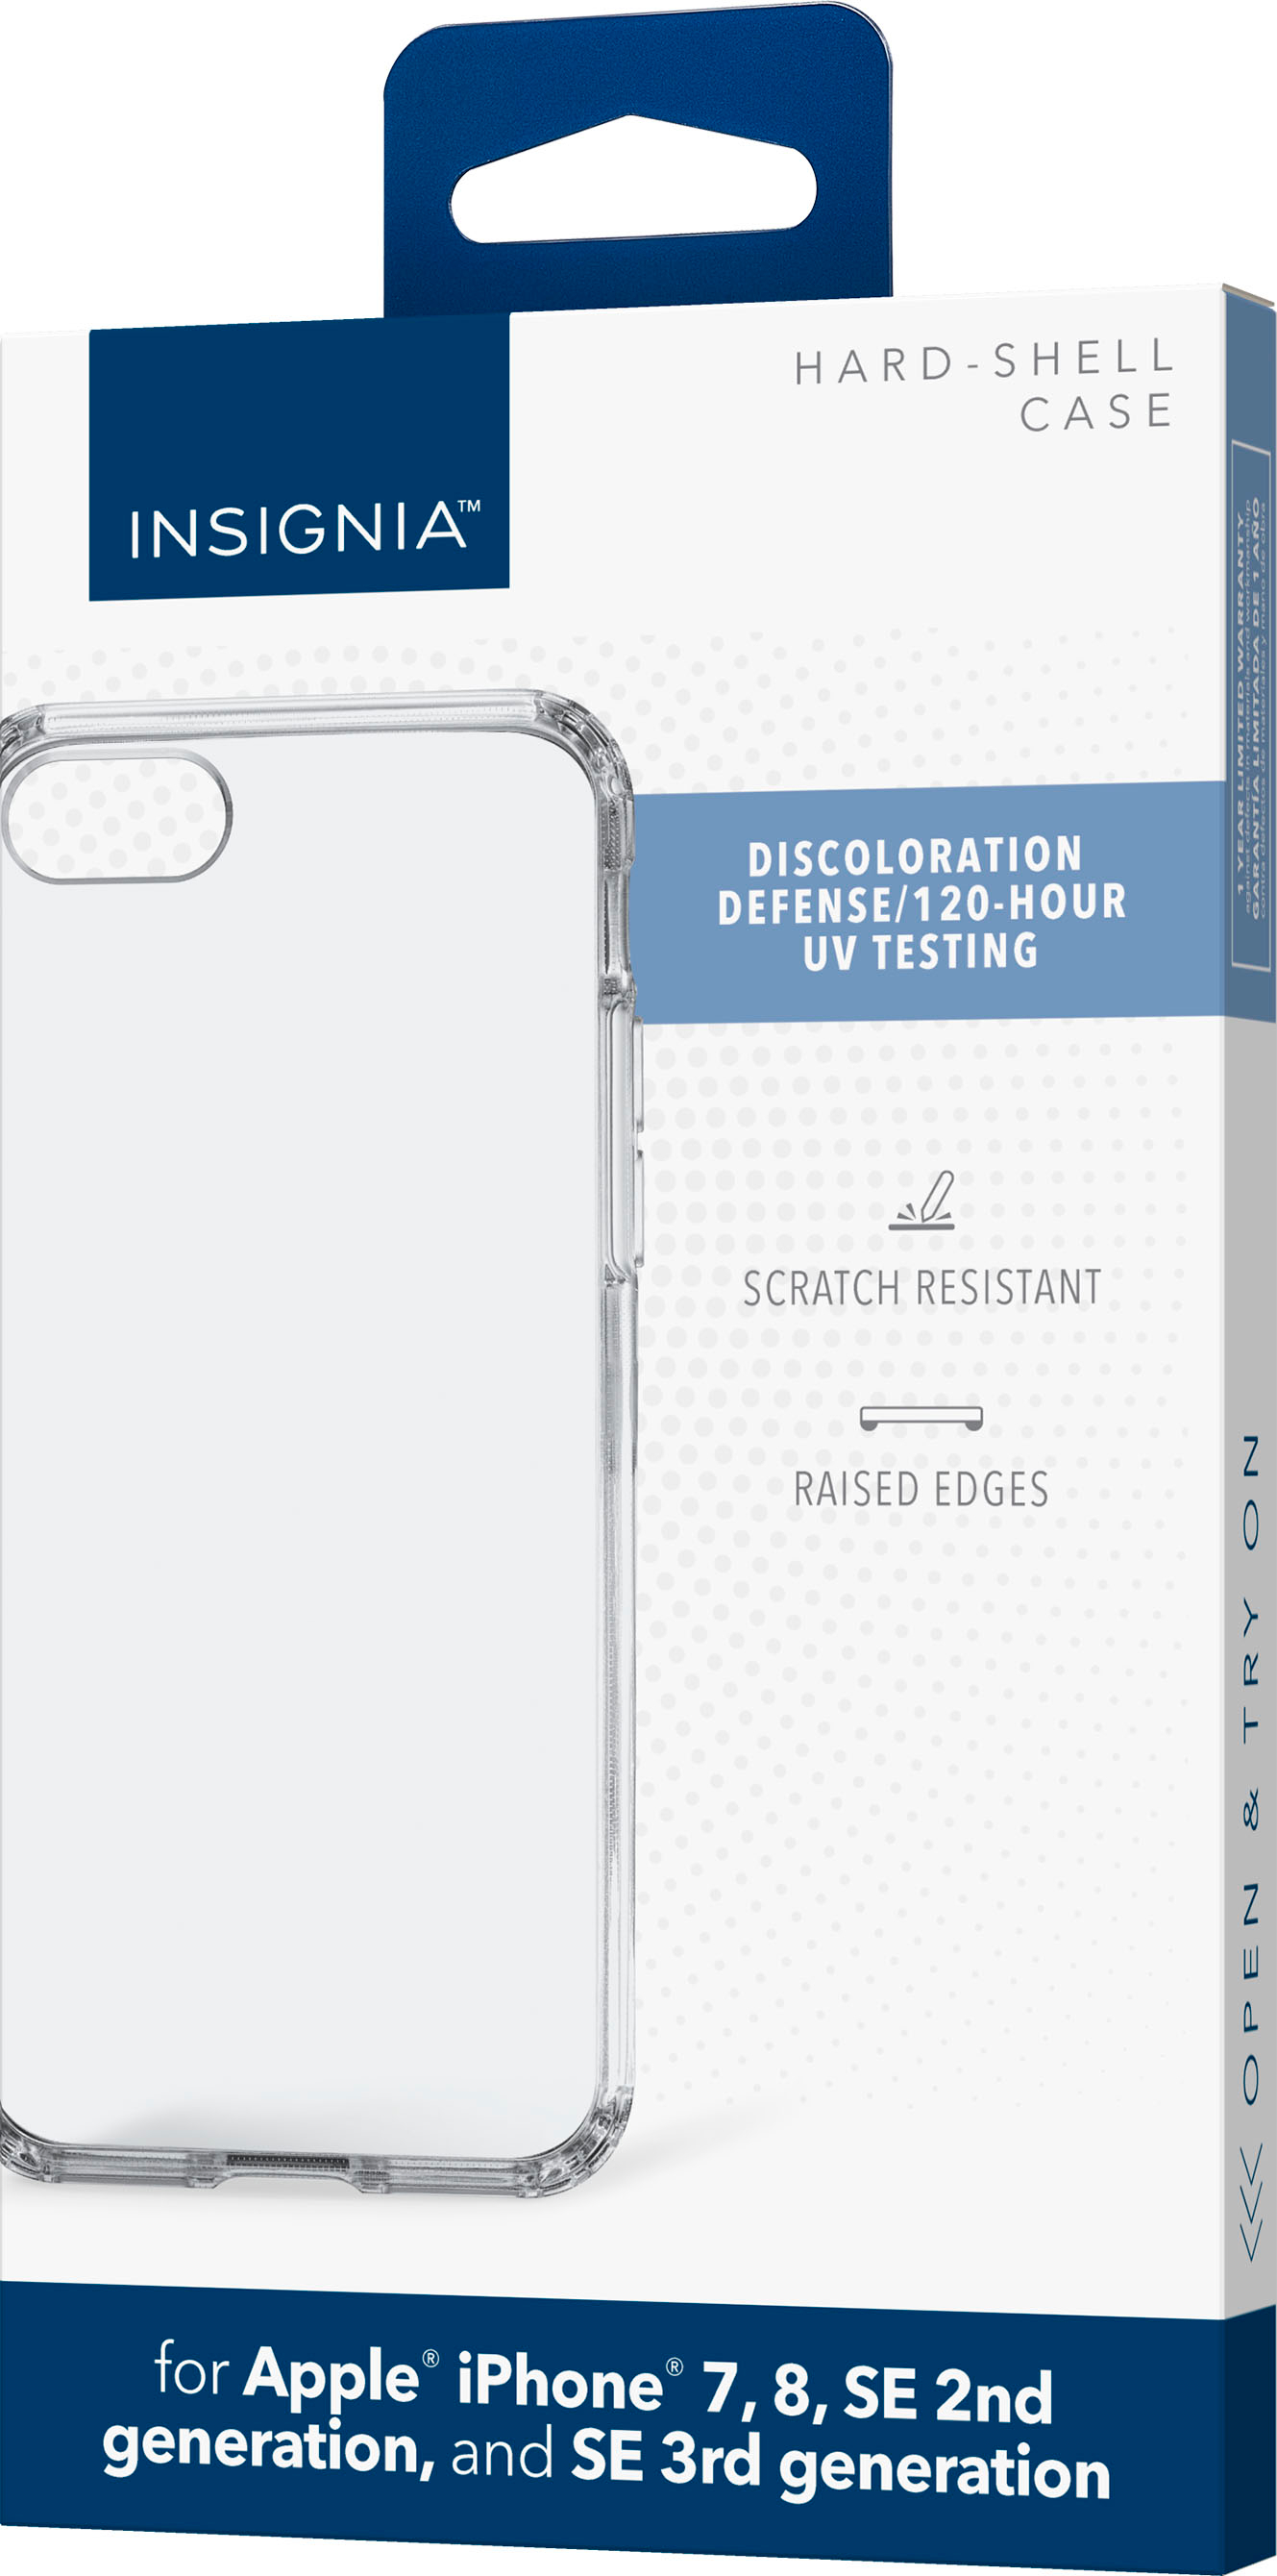 スマートフォン/携帯電話 スマートフォン本体 Insignia™ Hard-Shell Case for Apple iPhone 7, 8, SE (2nd 